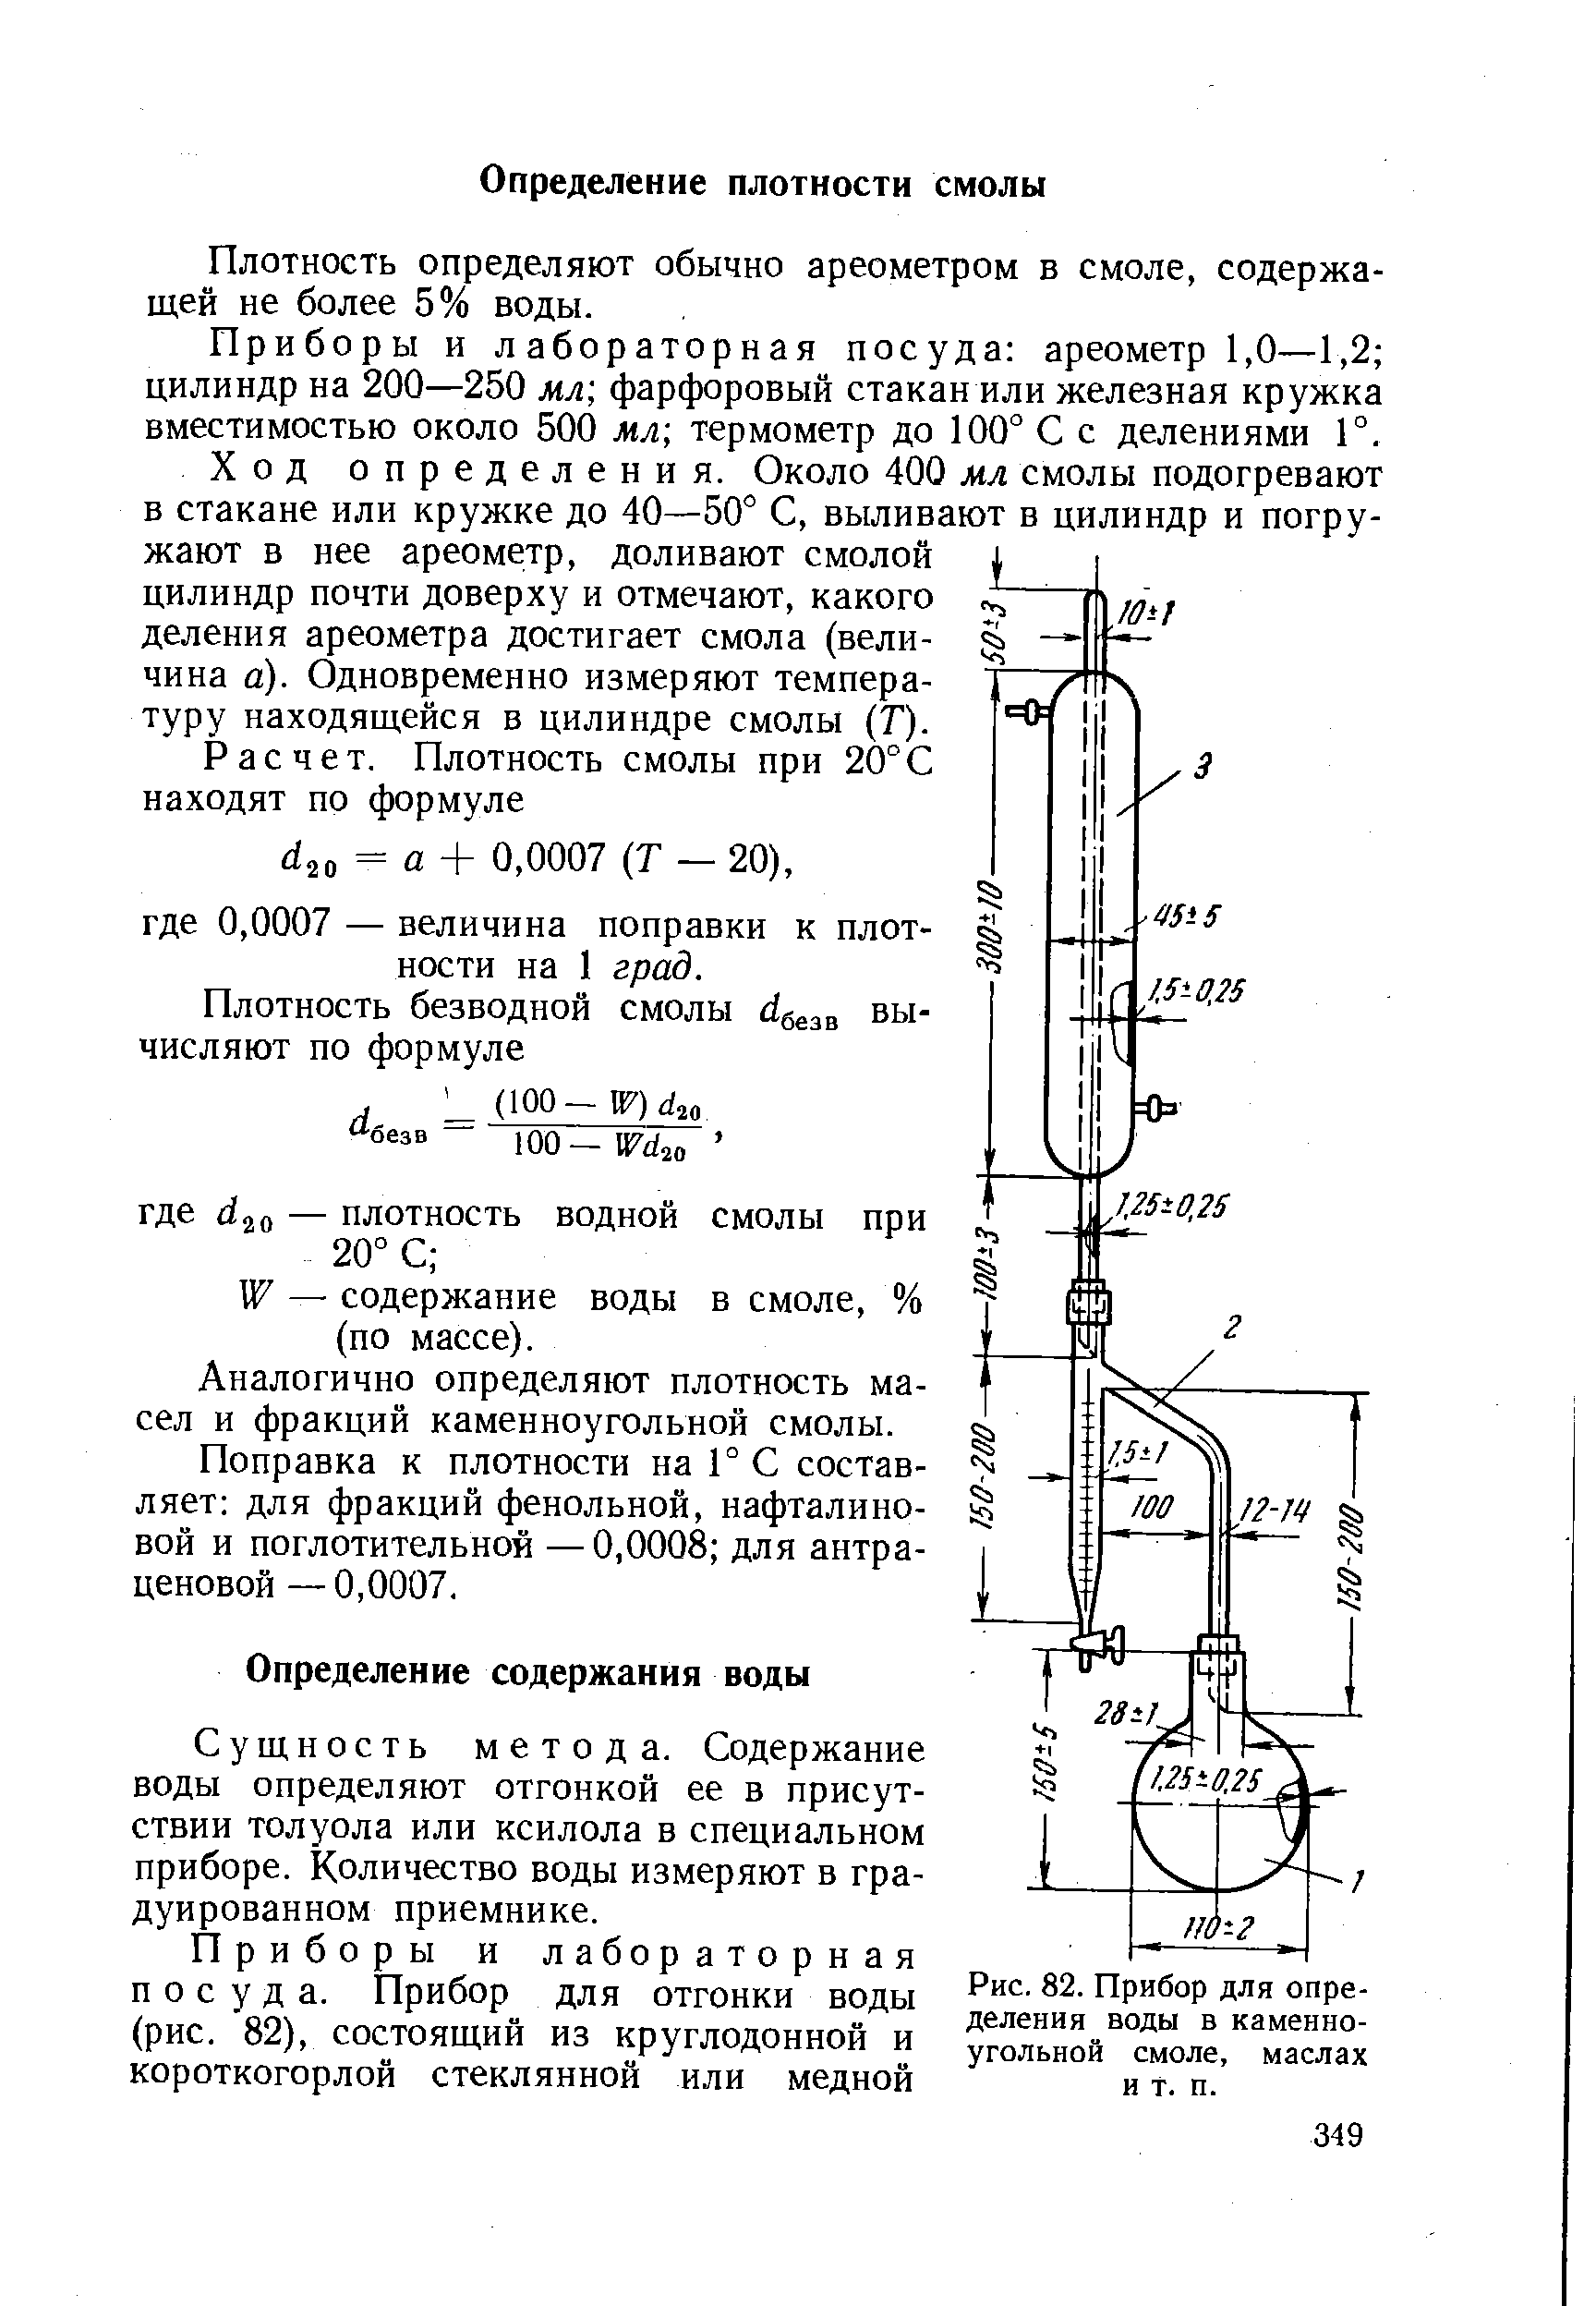 Аков-10-1 аппарат для определения содержания воды. Приемник-ЛОВУШКА К аппарату аков-25. Измерение содержание воды